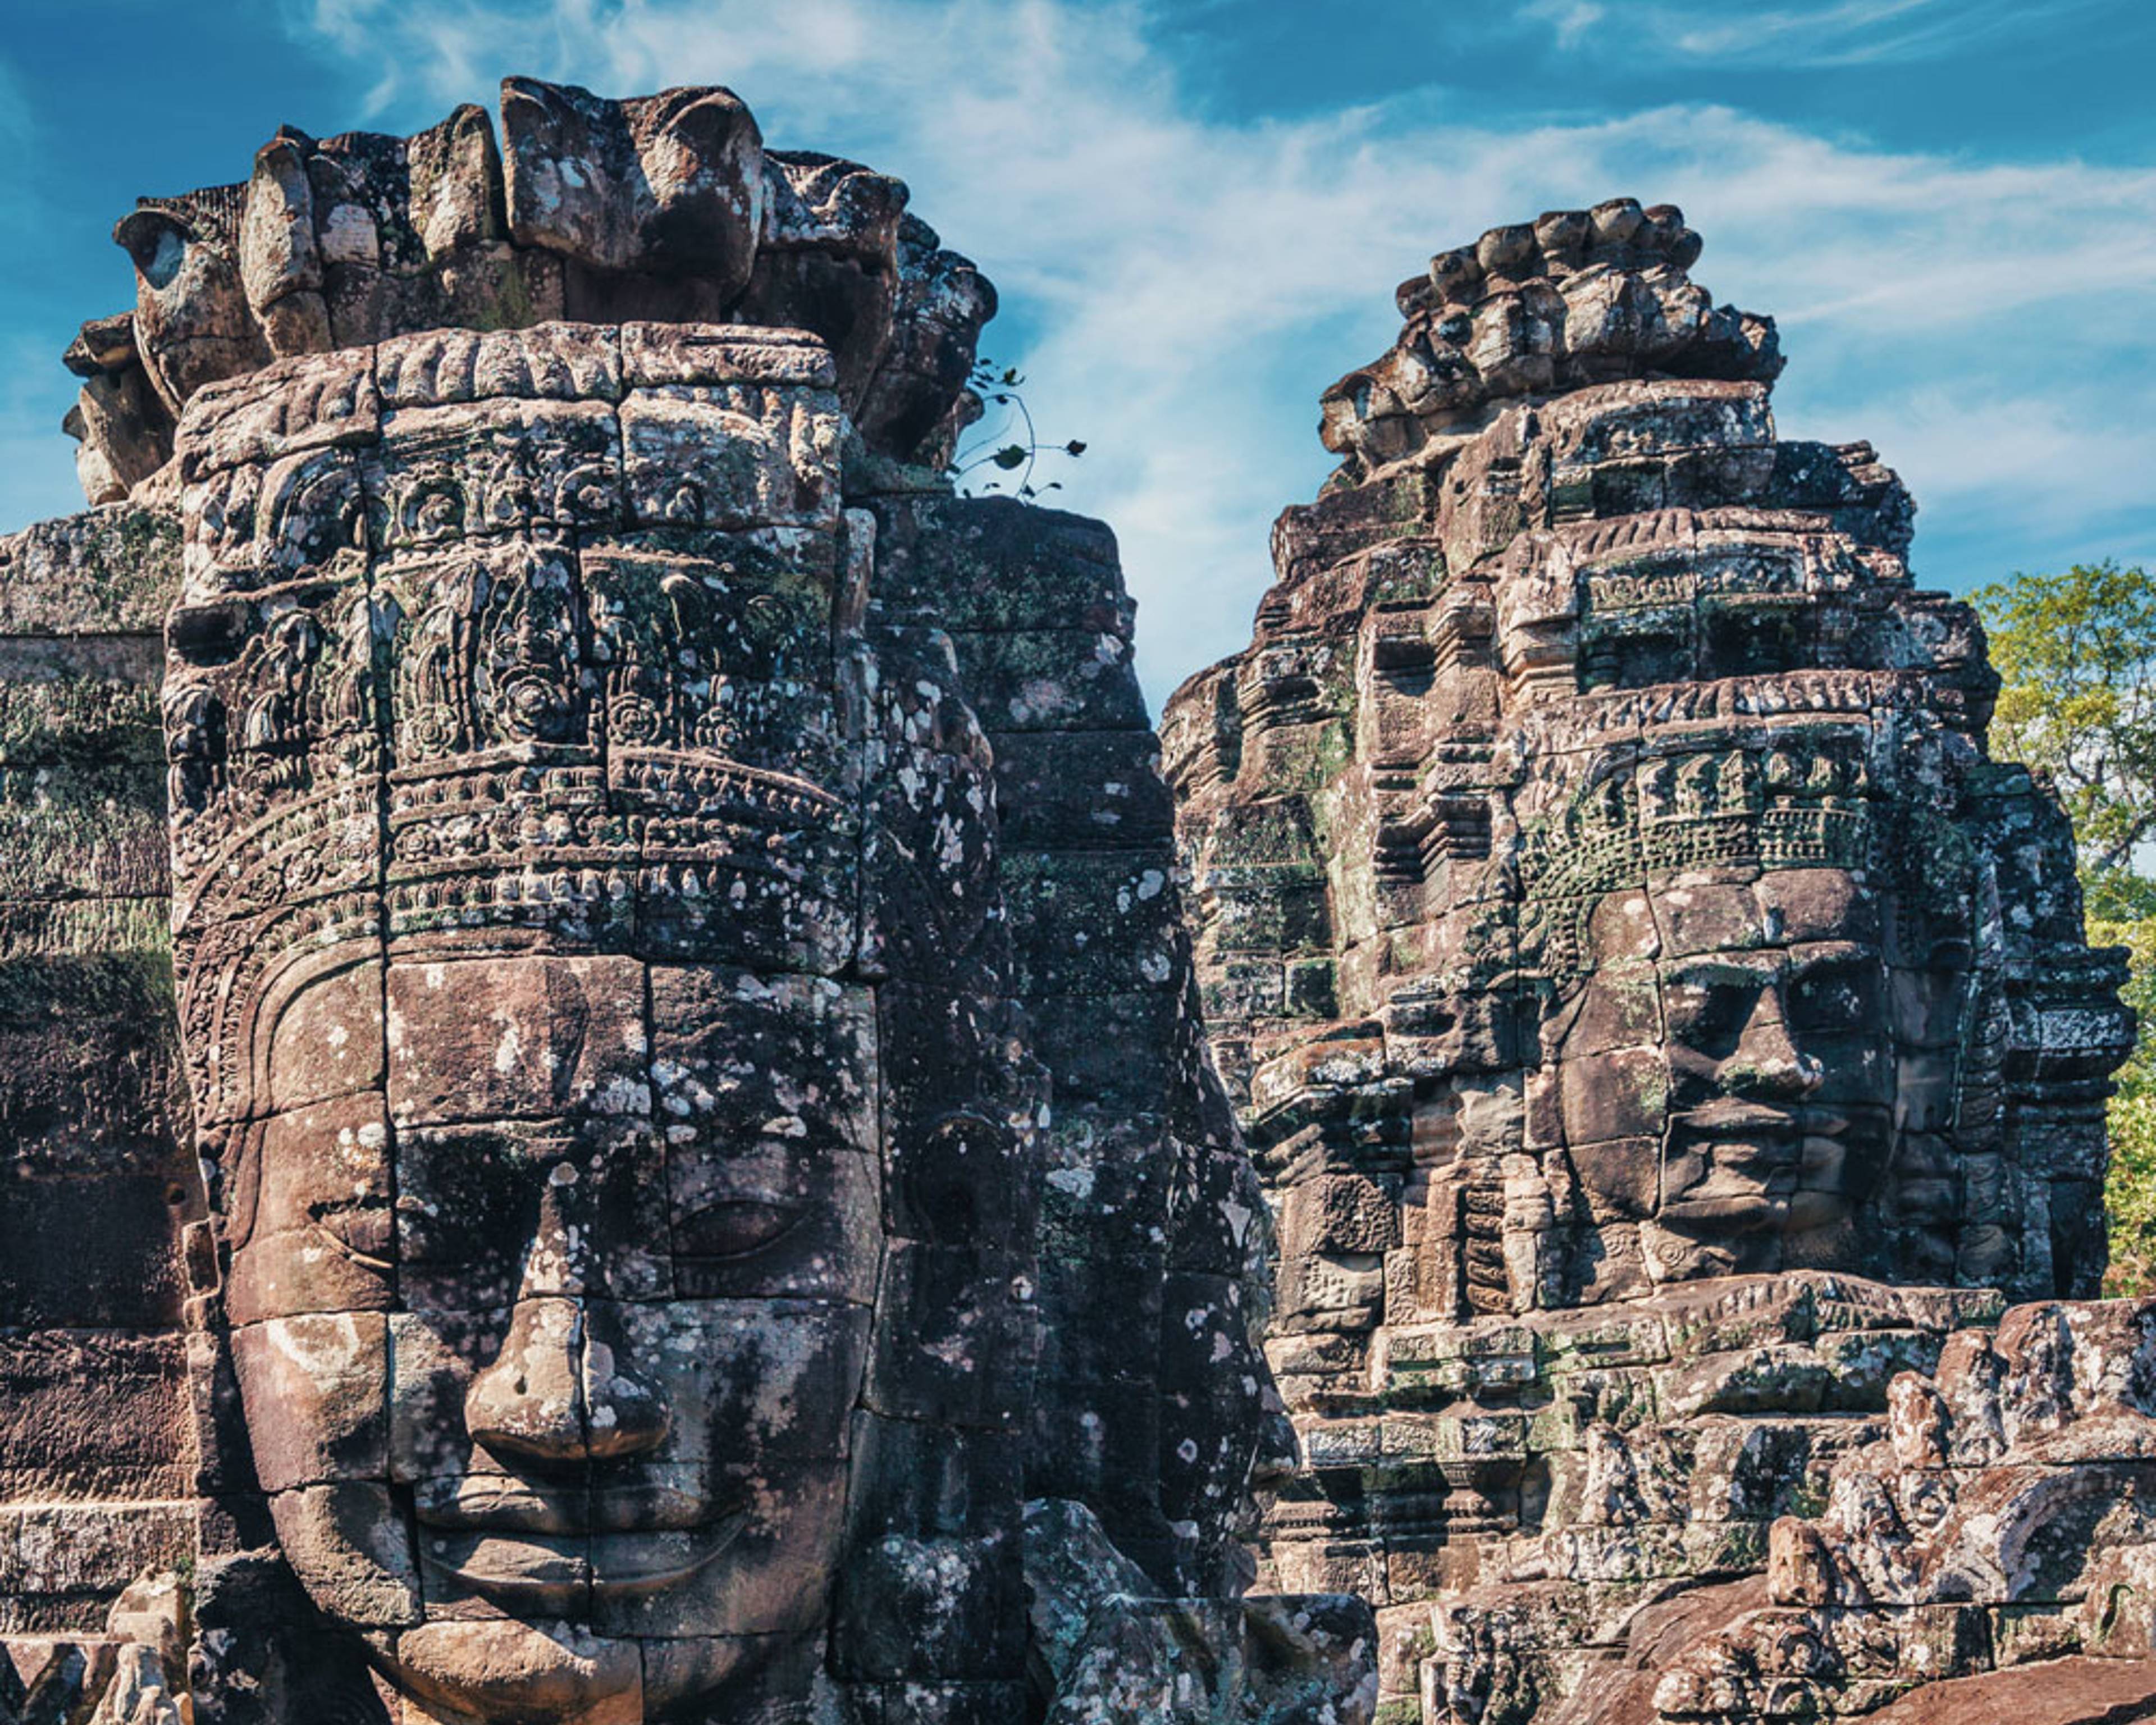 Eine Woche nach Kambodscha - Reise jetzt individuell gestalten